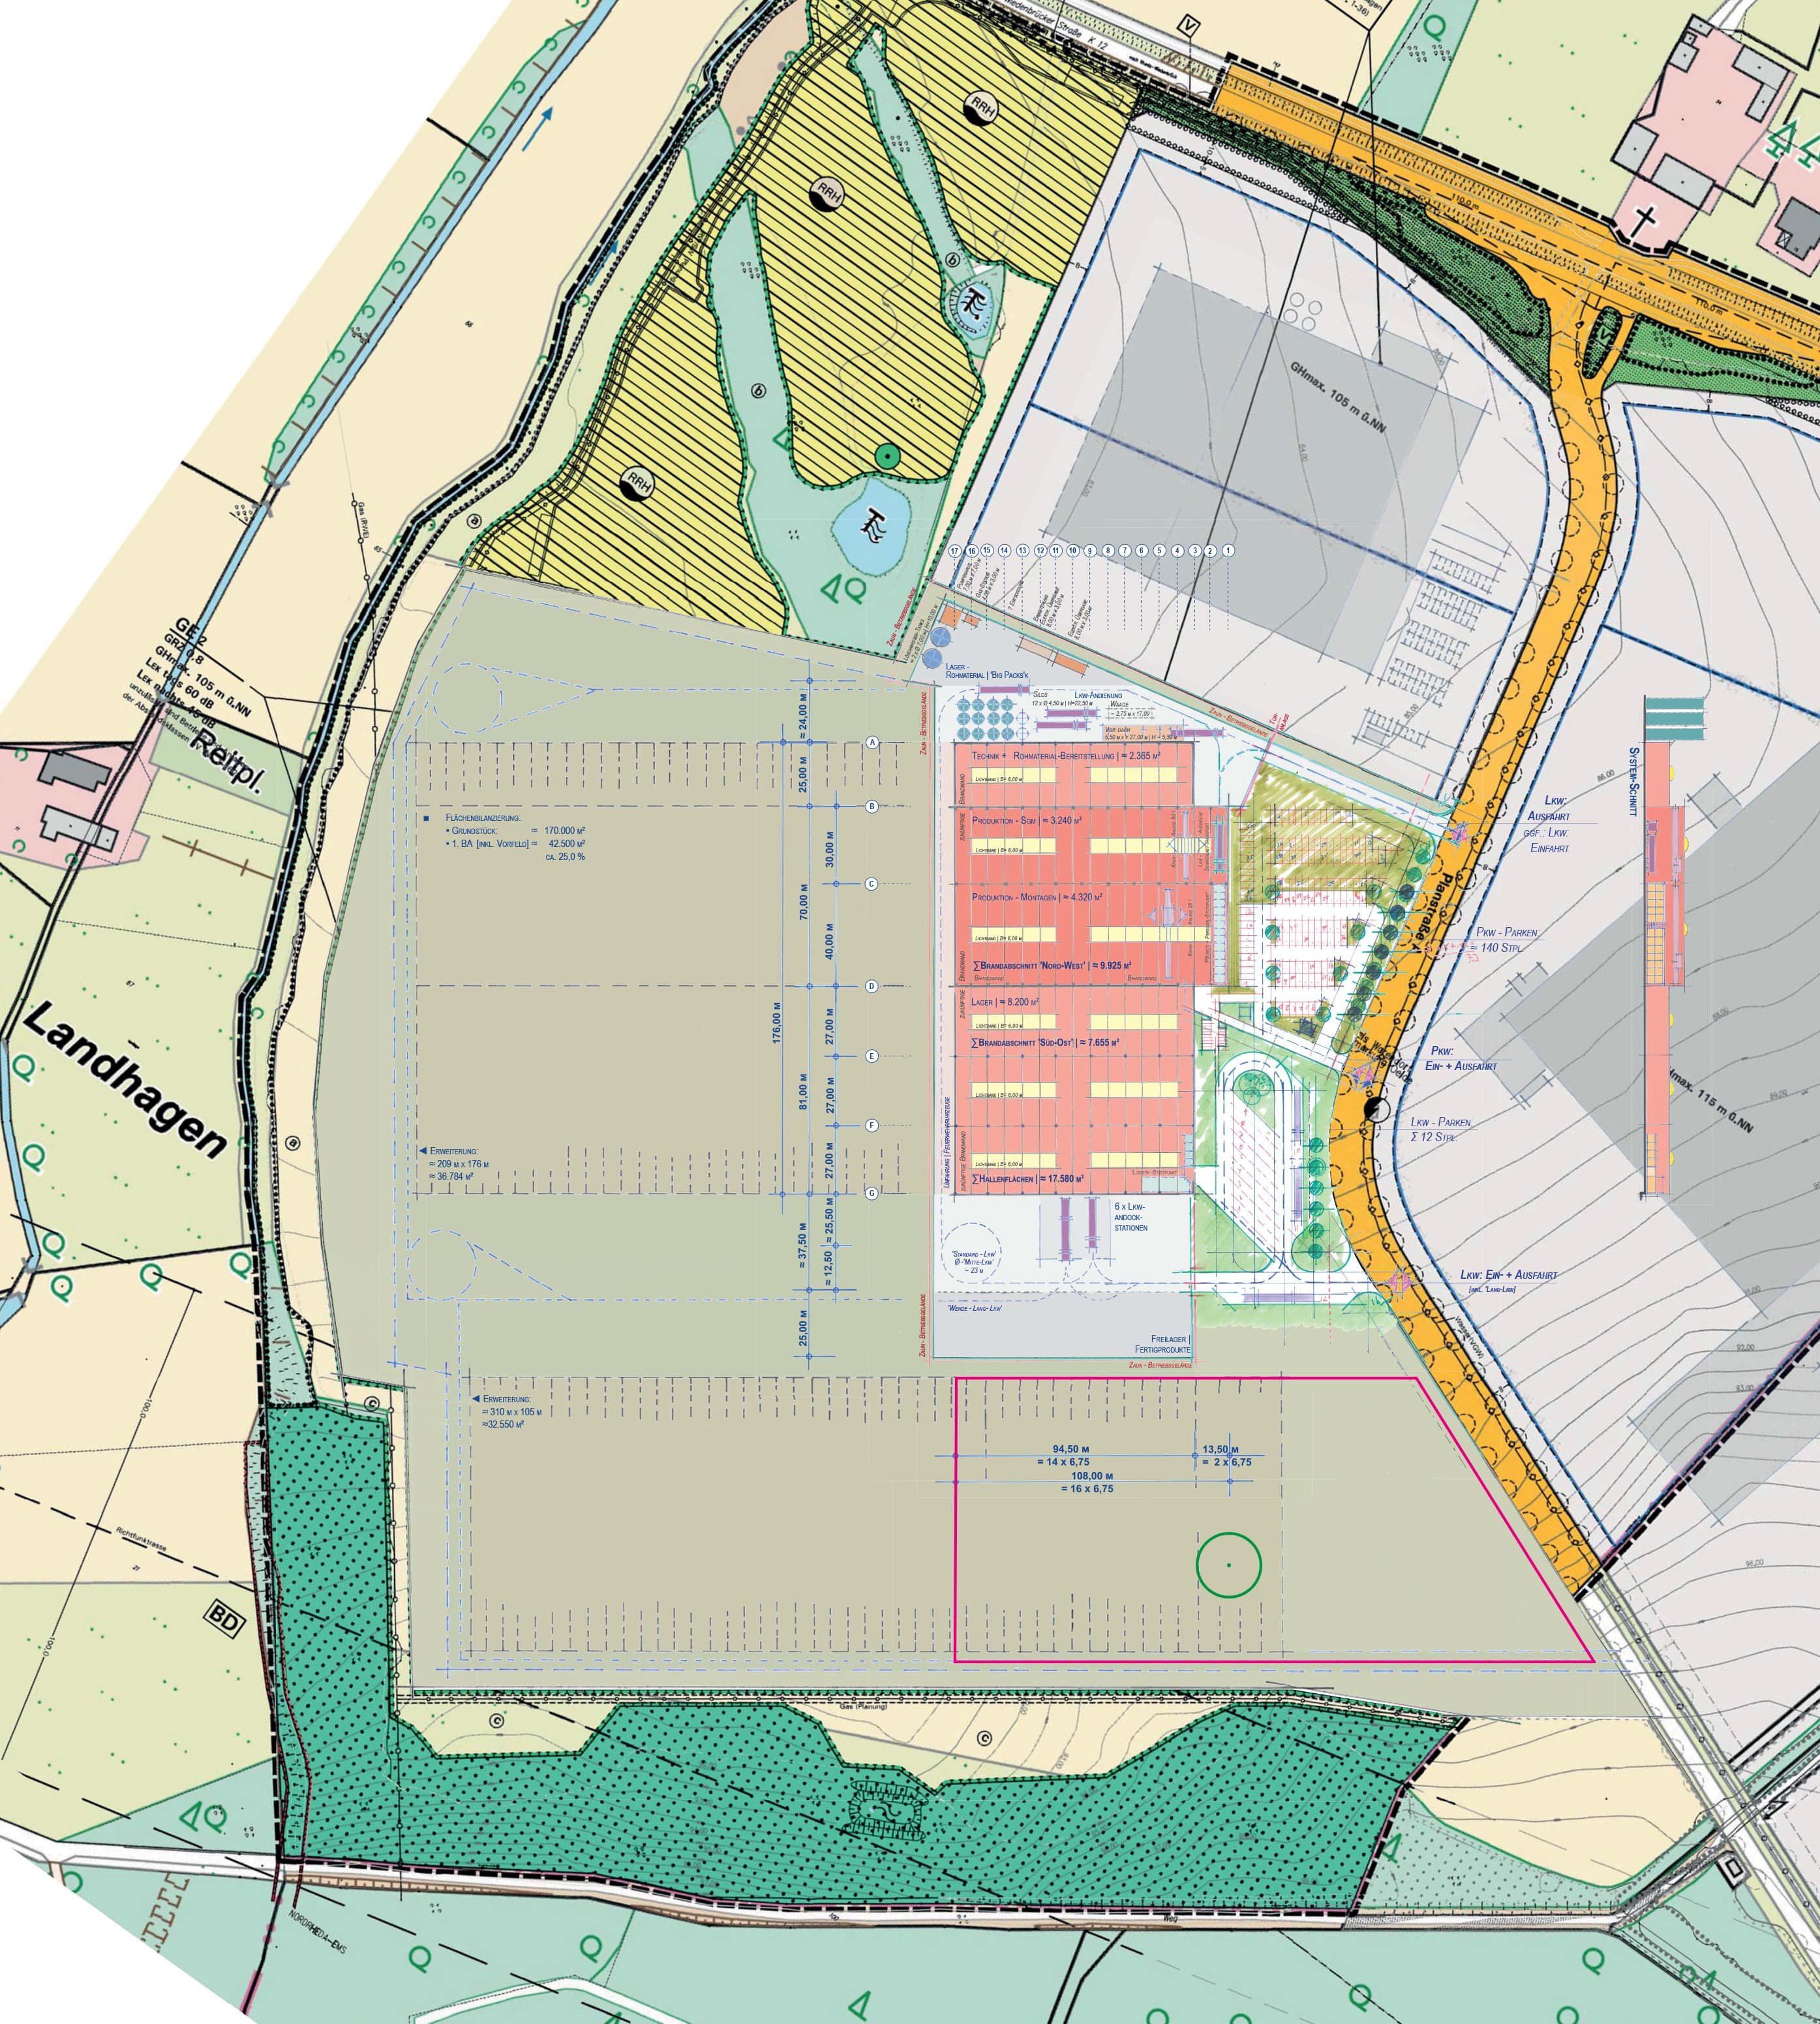 Development plan for the Aurea property